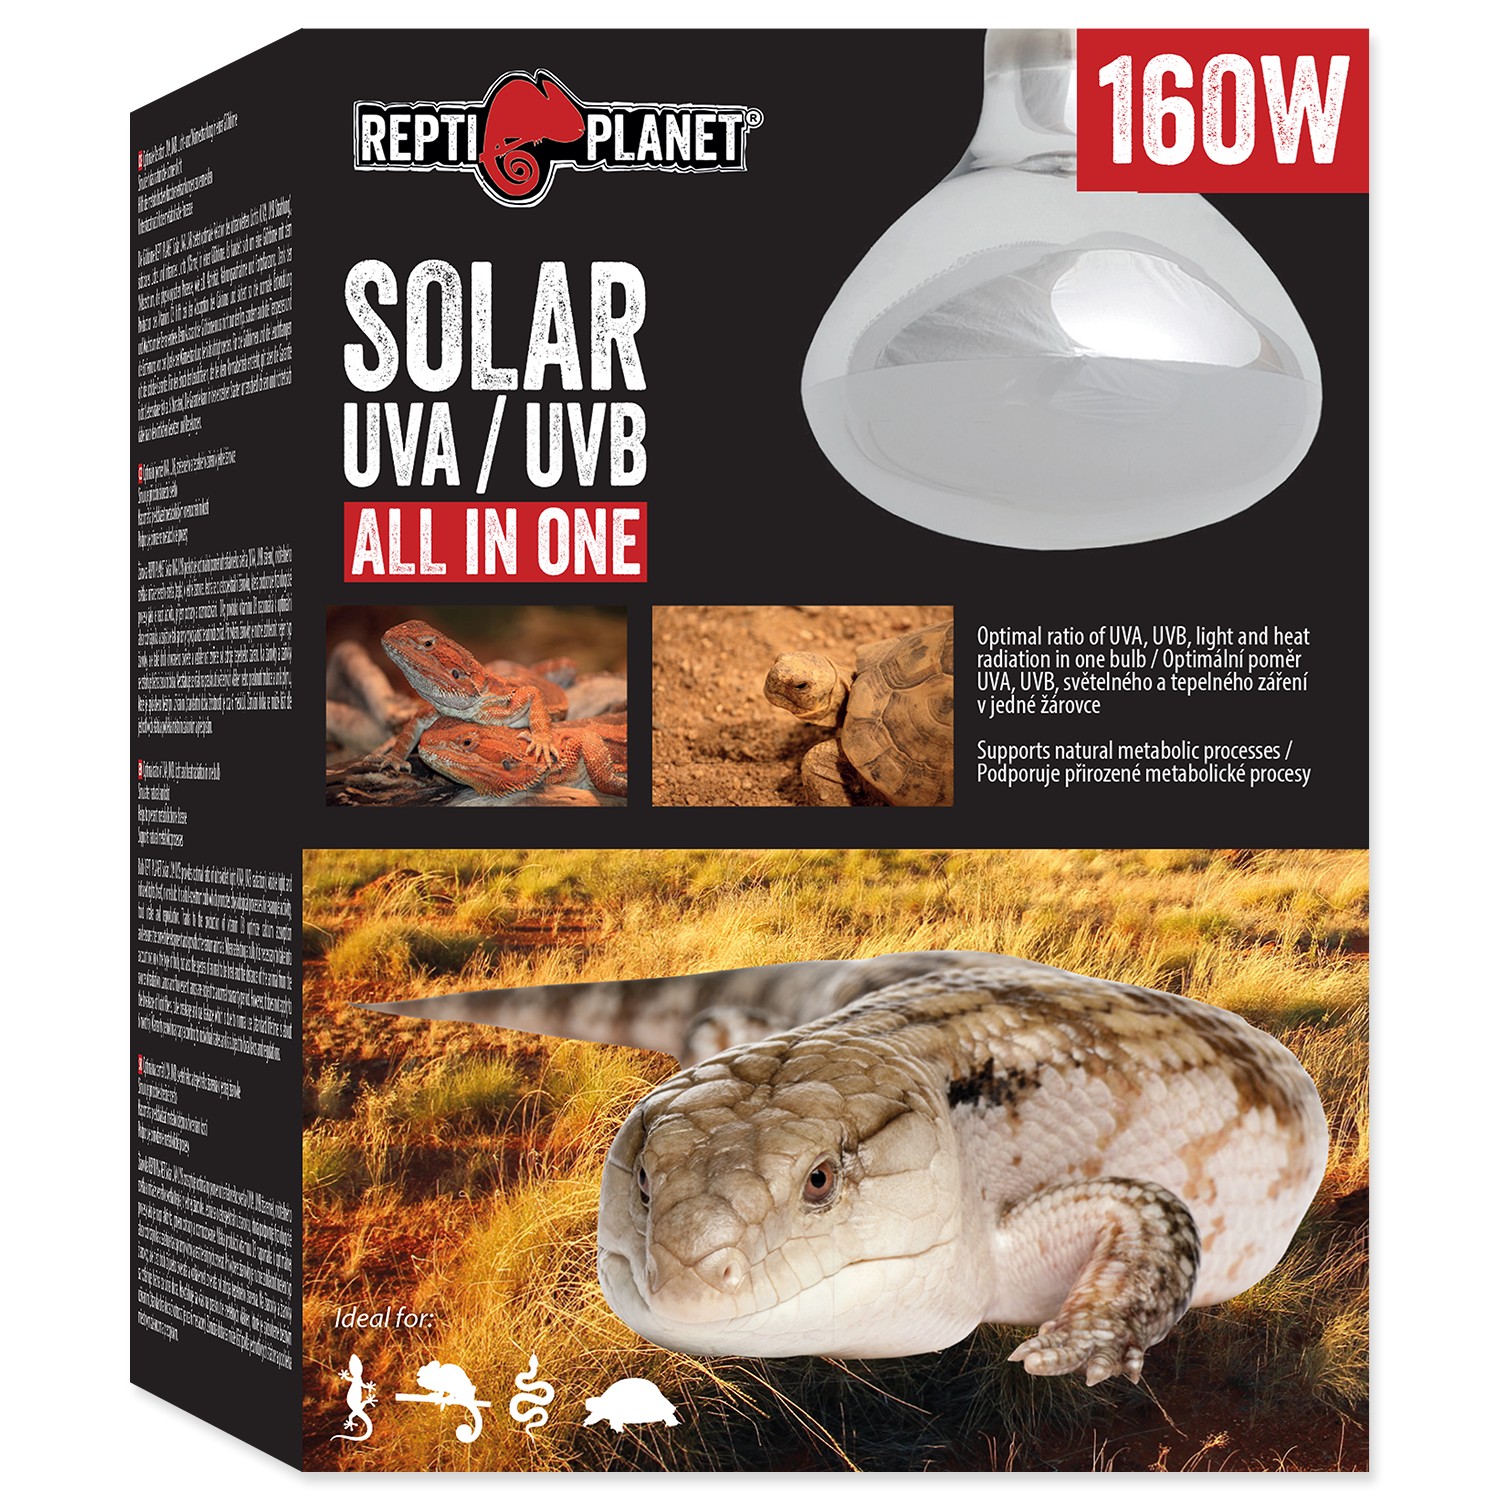 Лампа Solar Glo 160W, Repti Planet от зоомагазина Дино Зоо